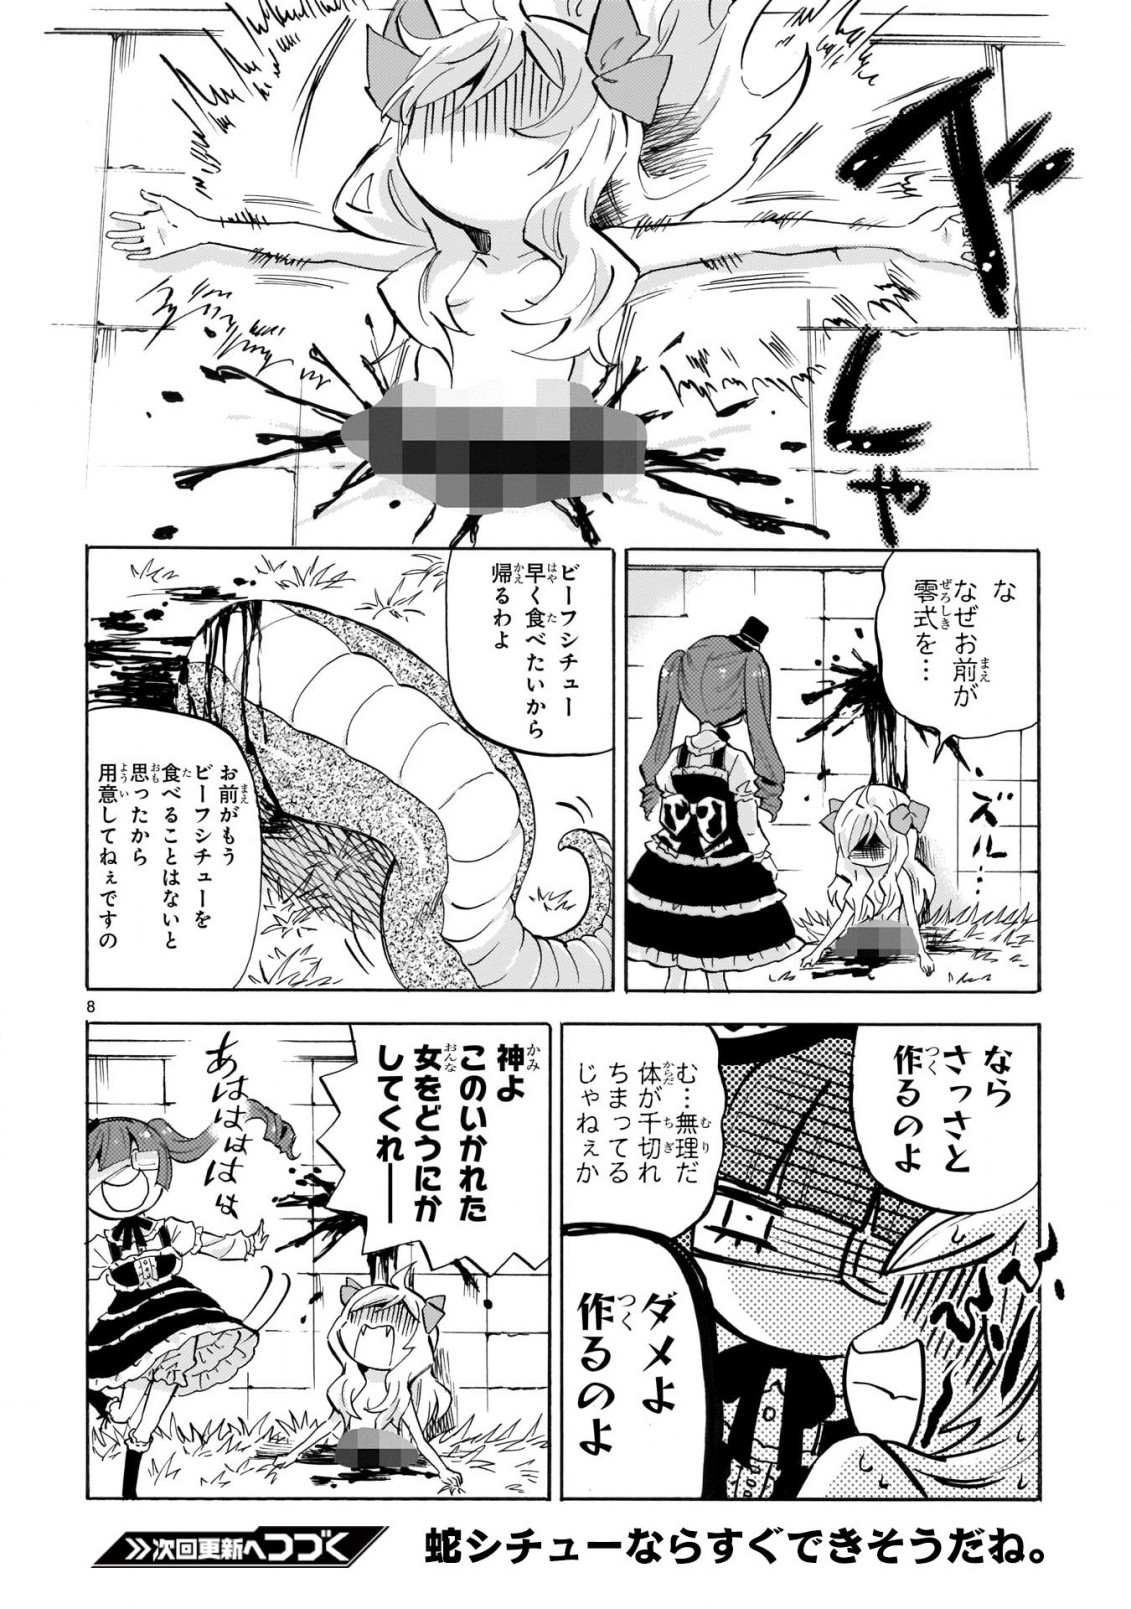 Jashin-chan Dropkick - Chapter 223 - Page 8